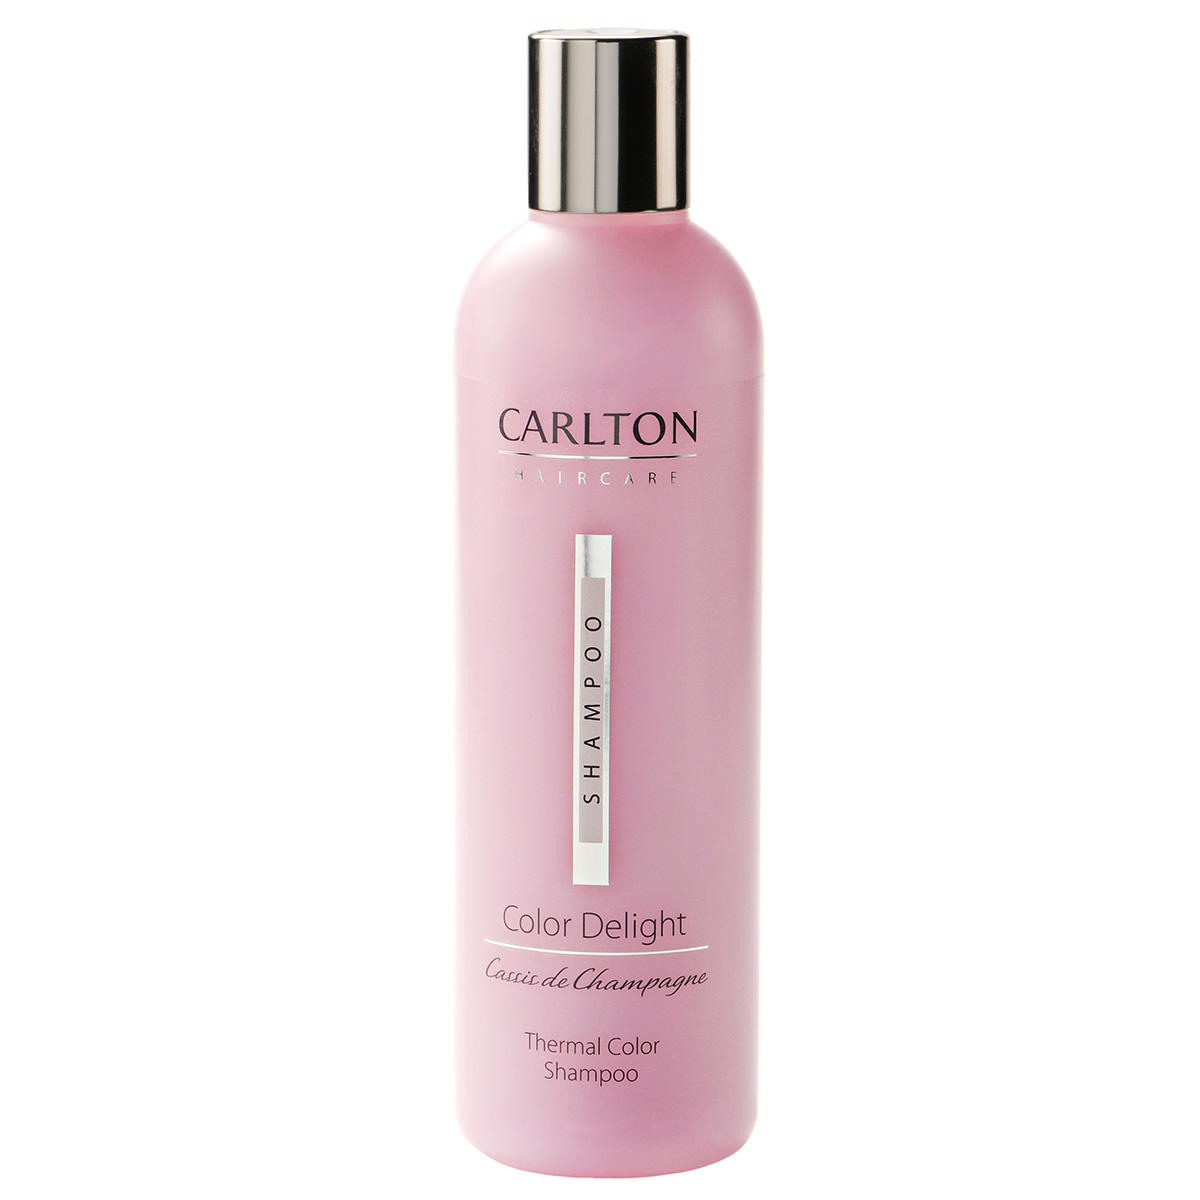 CARLTON Color Delight Thermal Color Shampoo 300 ml - 1